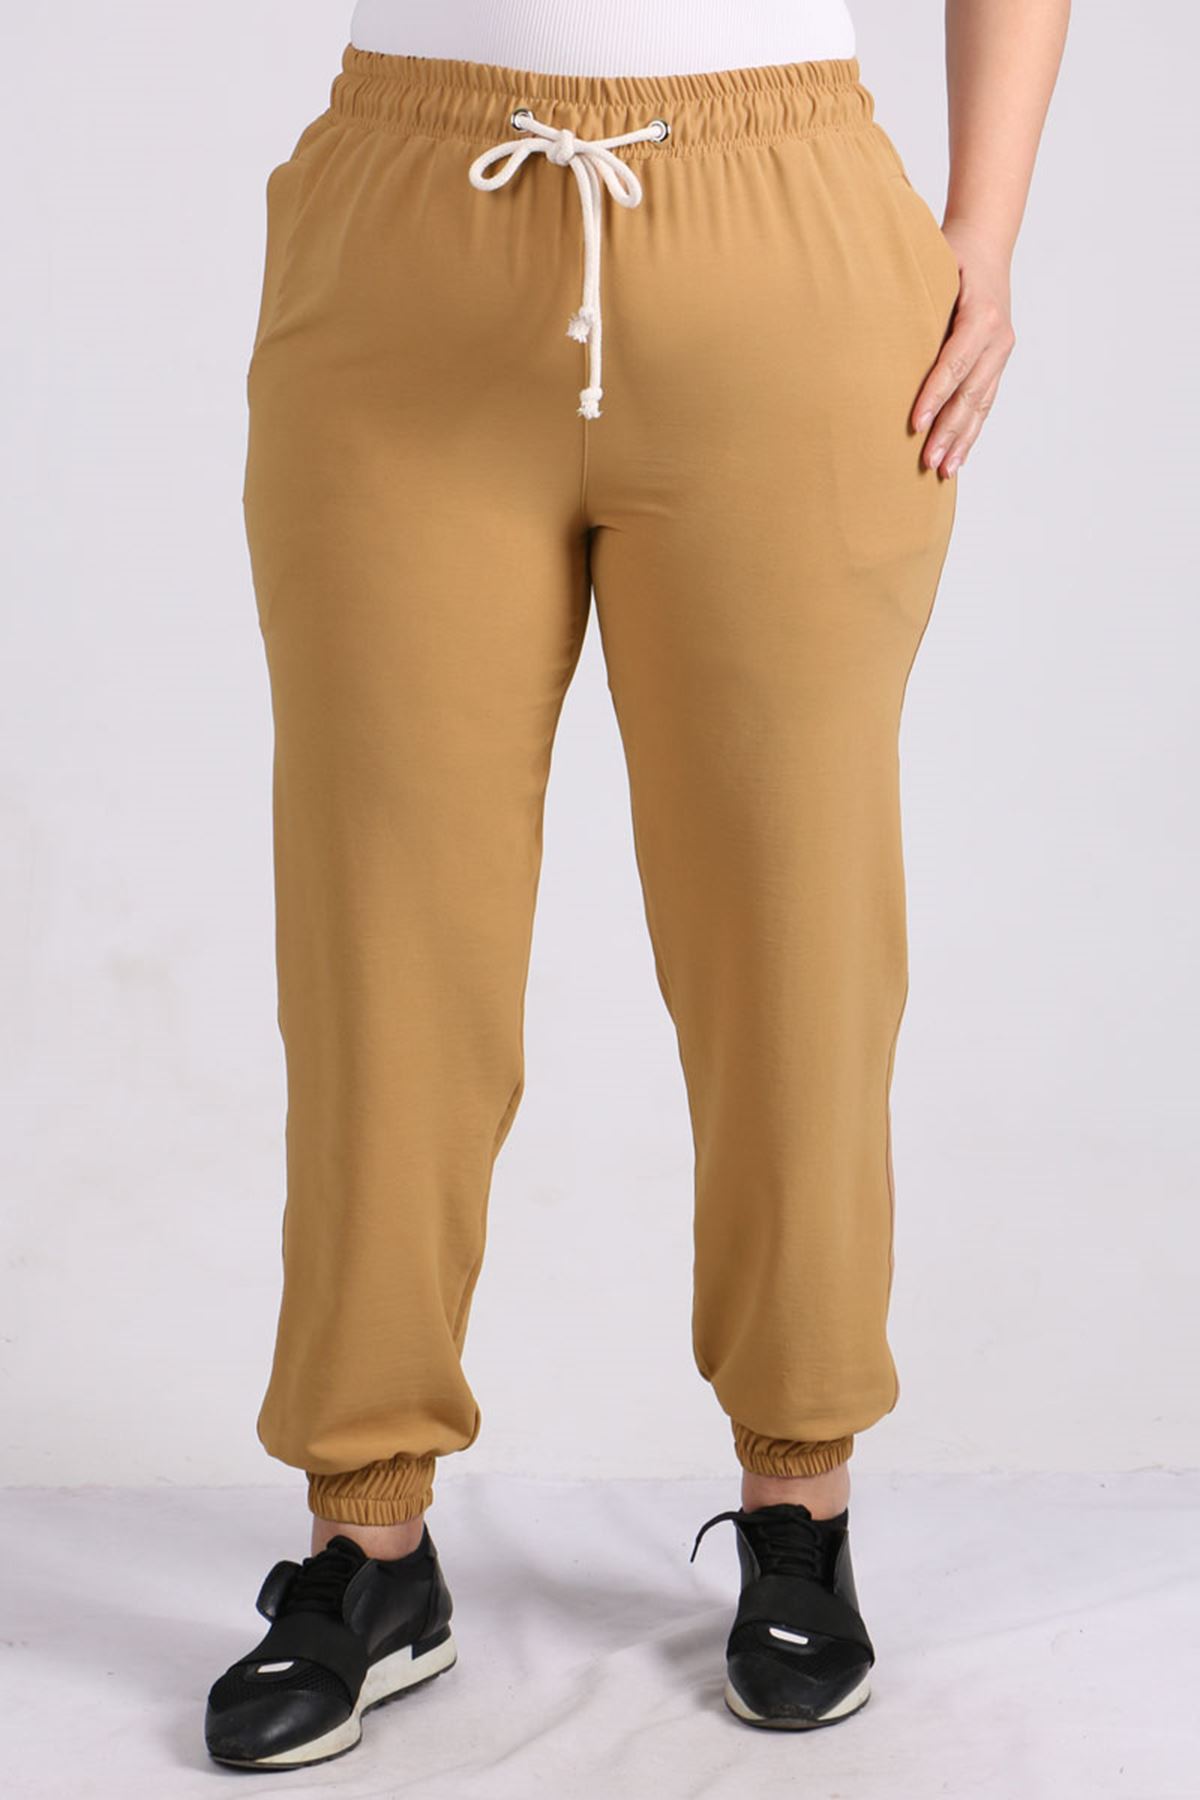 9148 Plus Size Elastic Pants -Light Mink 